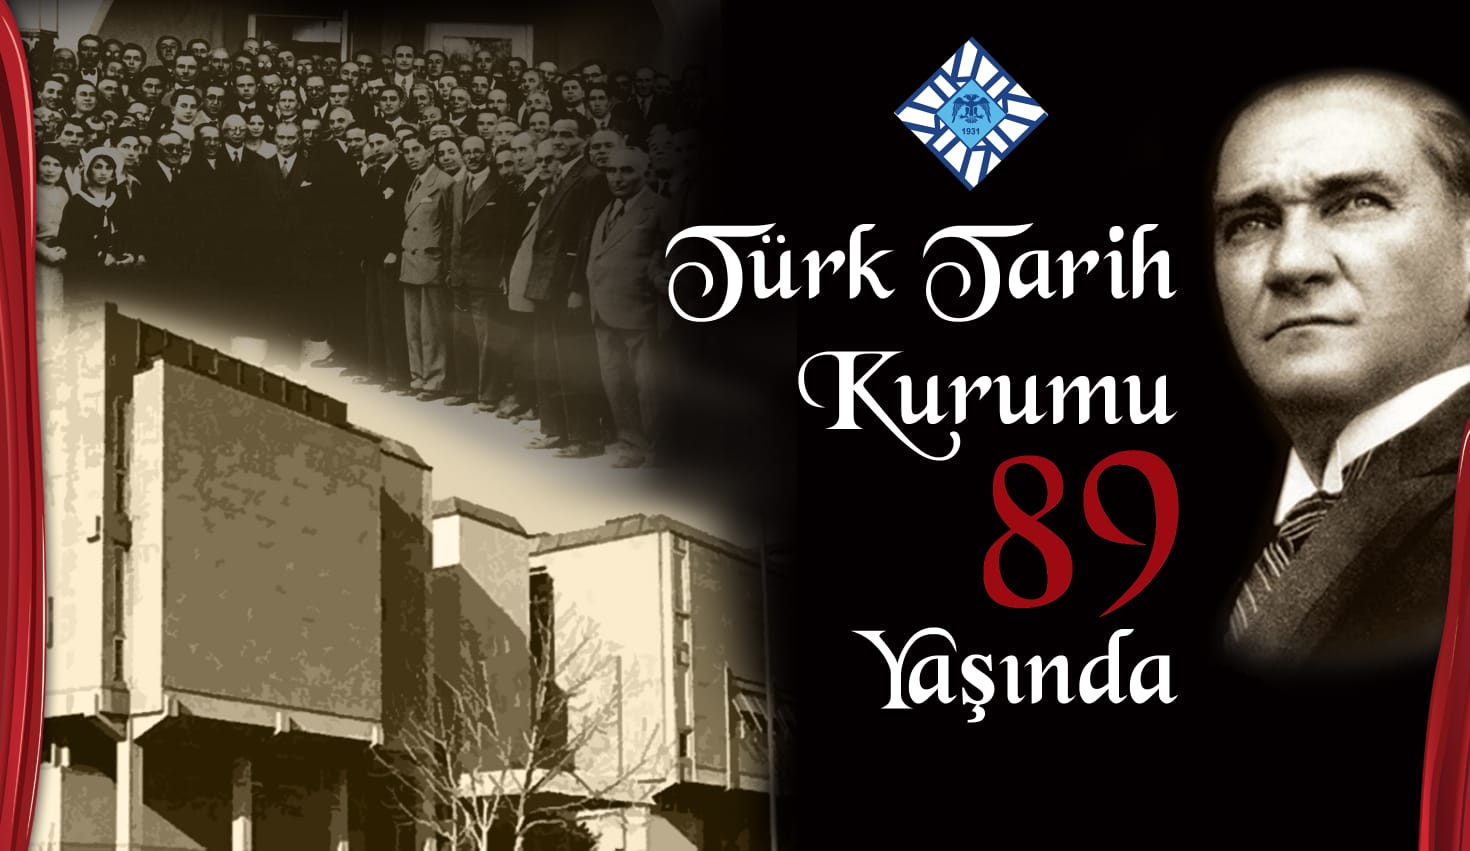  Türk Tarih Kurumu 89 Yaşında